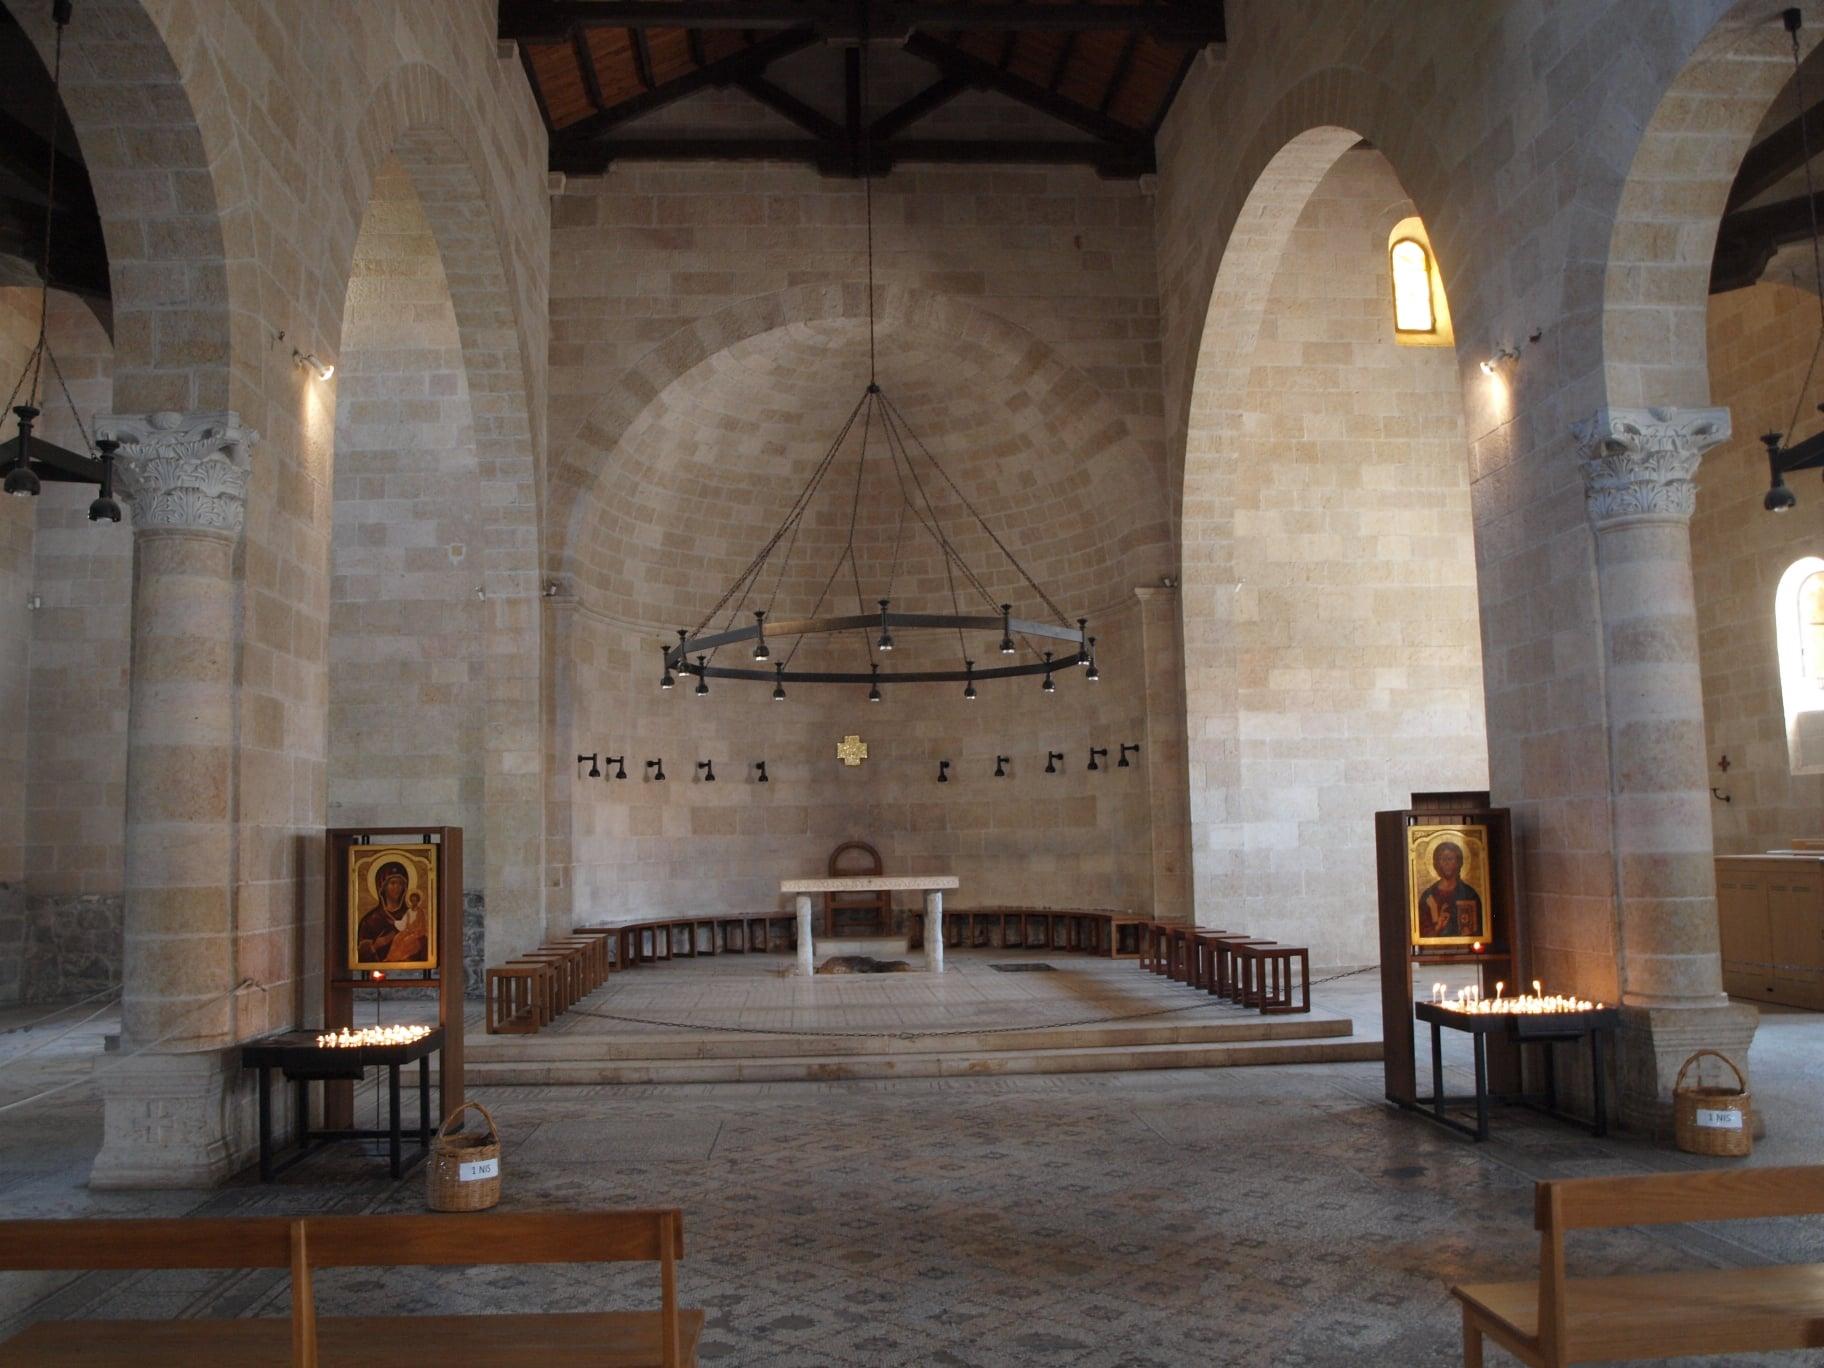 Kirche der Brotvermehrung in Tabgha in Israel